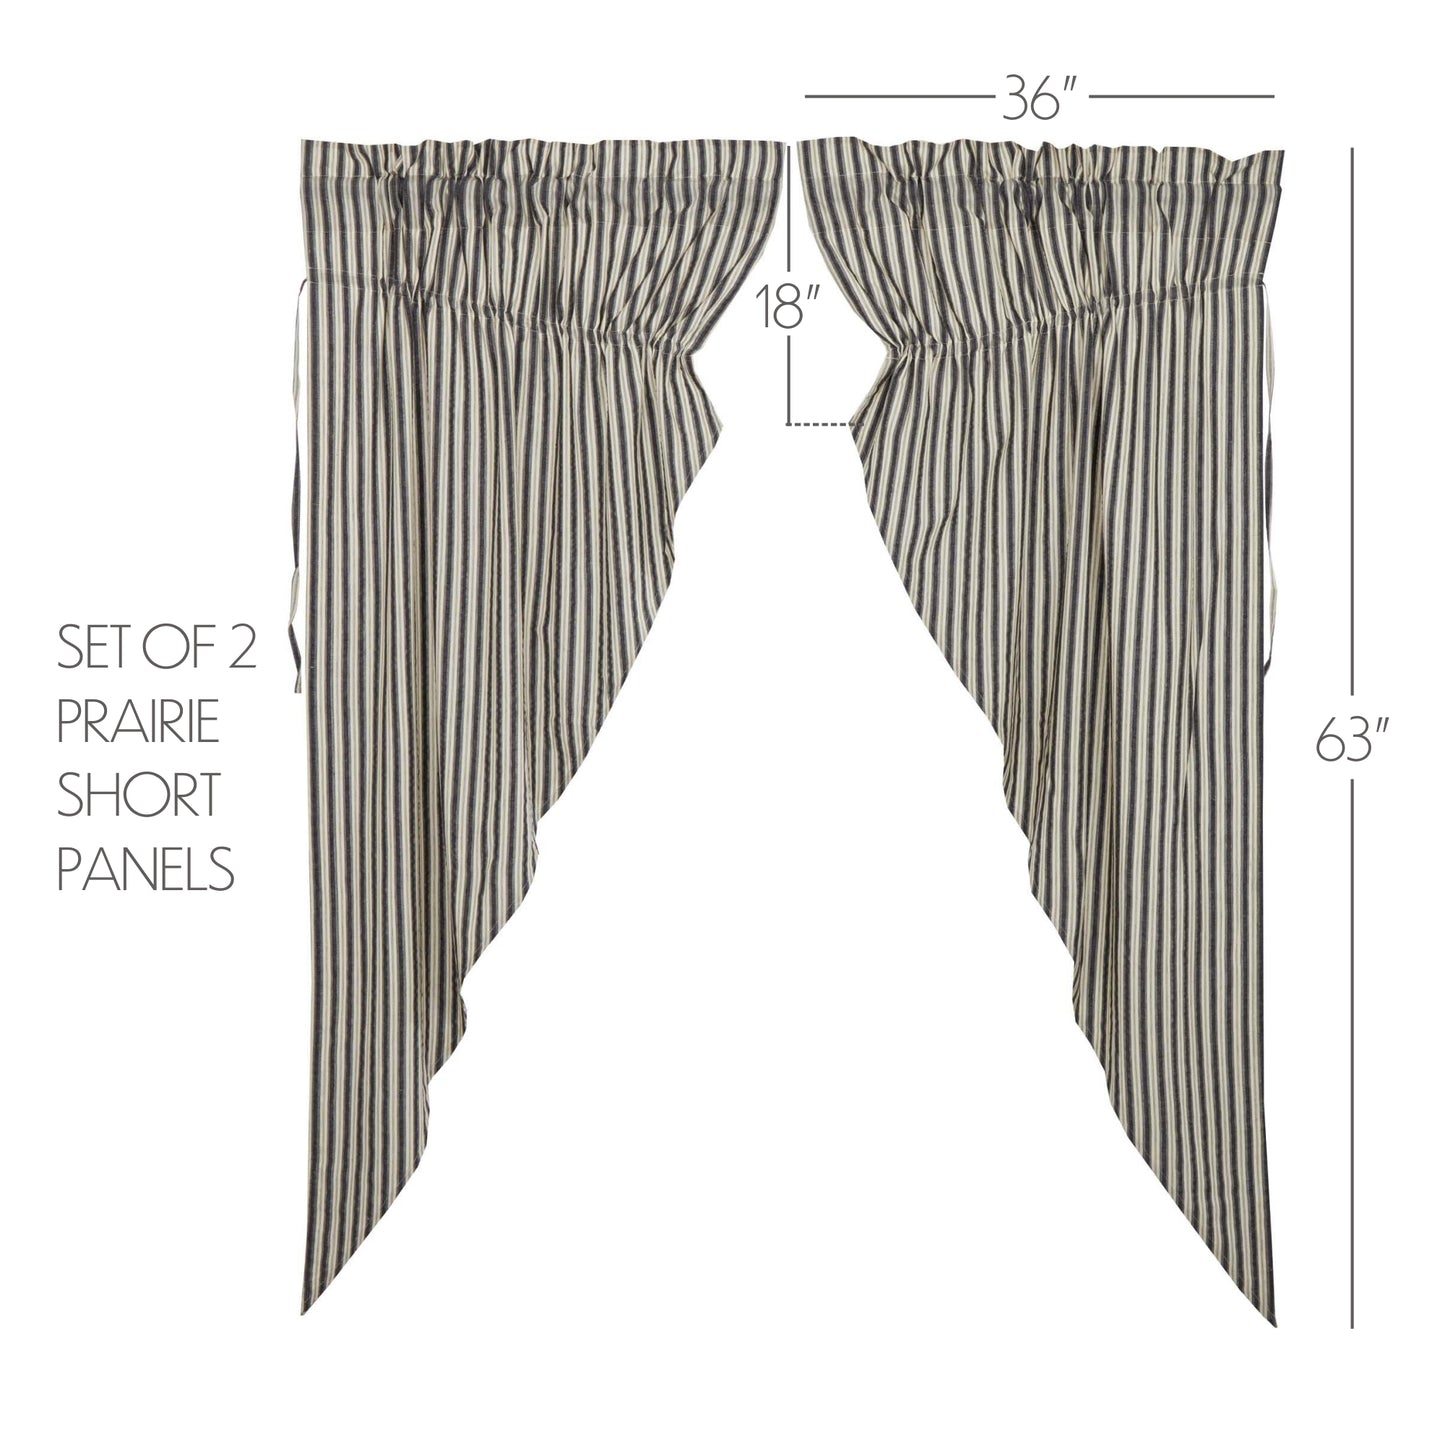 69957-Ashmont-Ticking-Stripe-Prairie-Short-Panel-Set-of-2-63x36x18-image-4